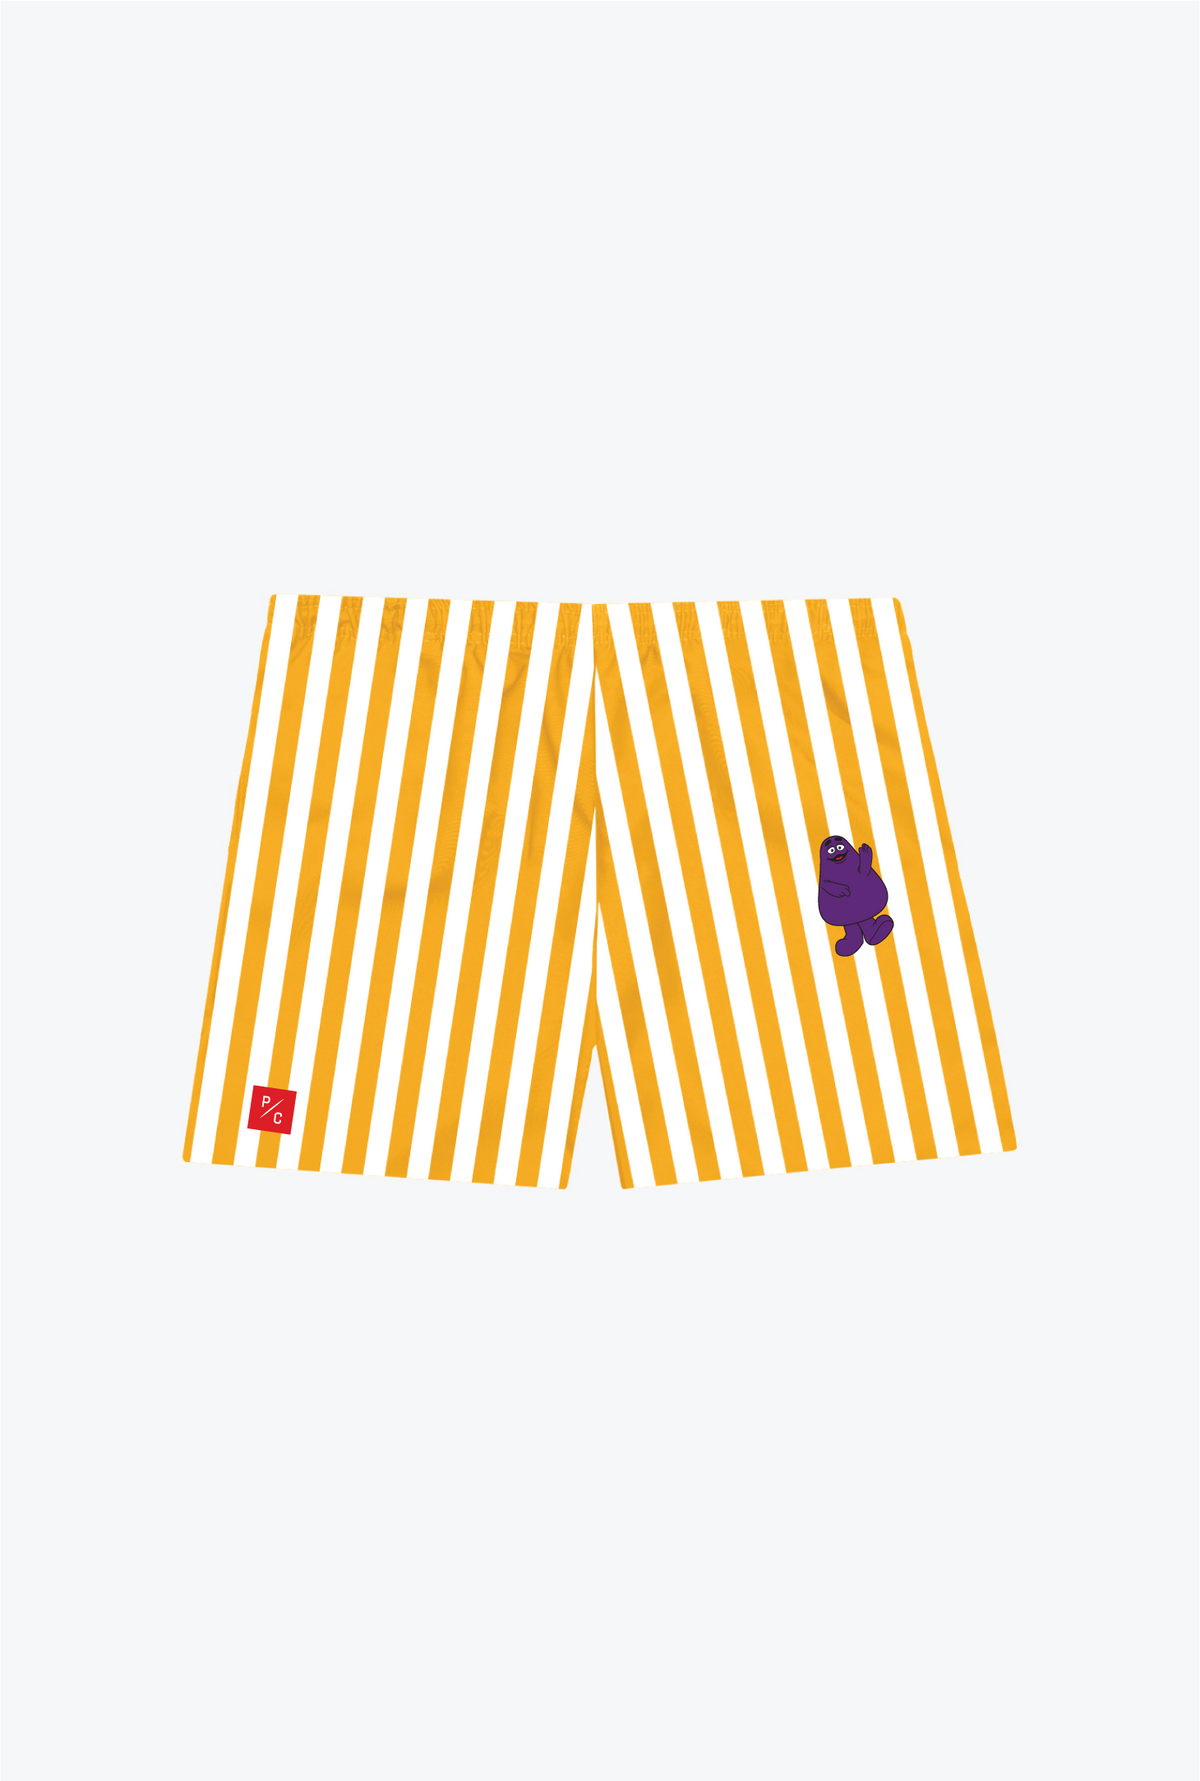 P/C x McDonald's Grimace Resort Shorts - Yellow/White